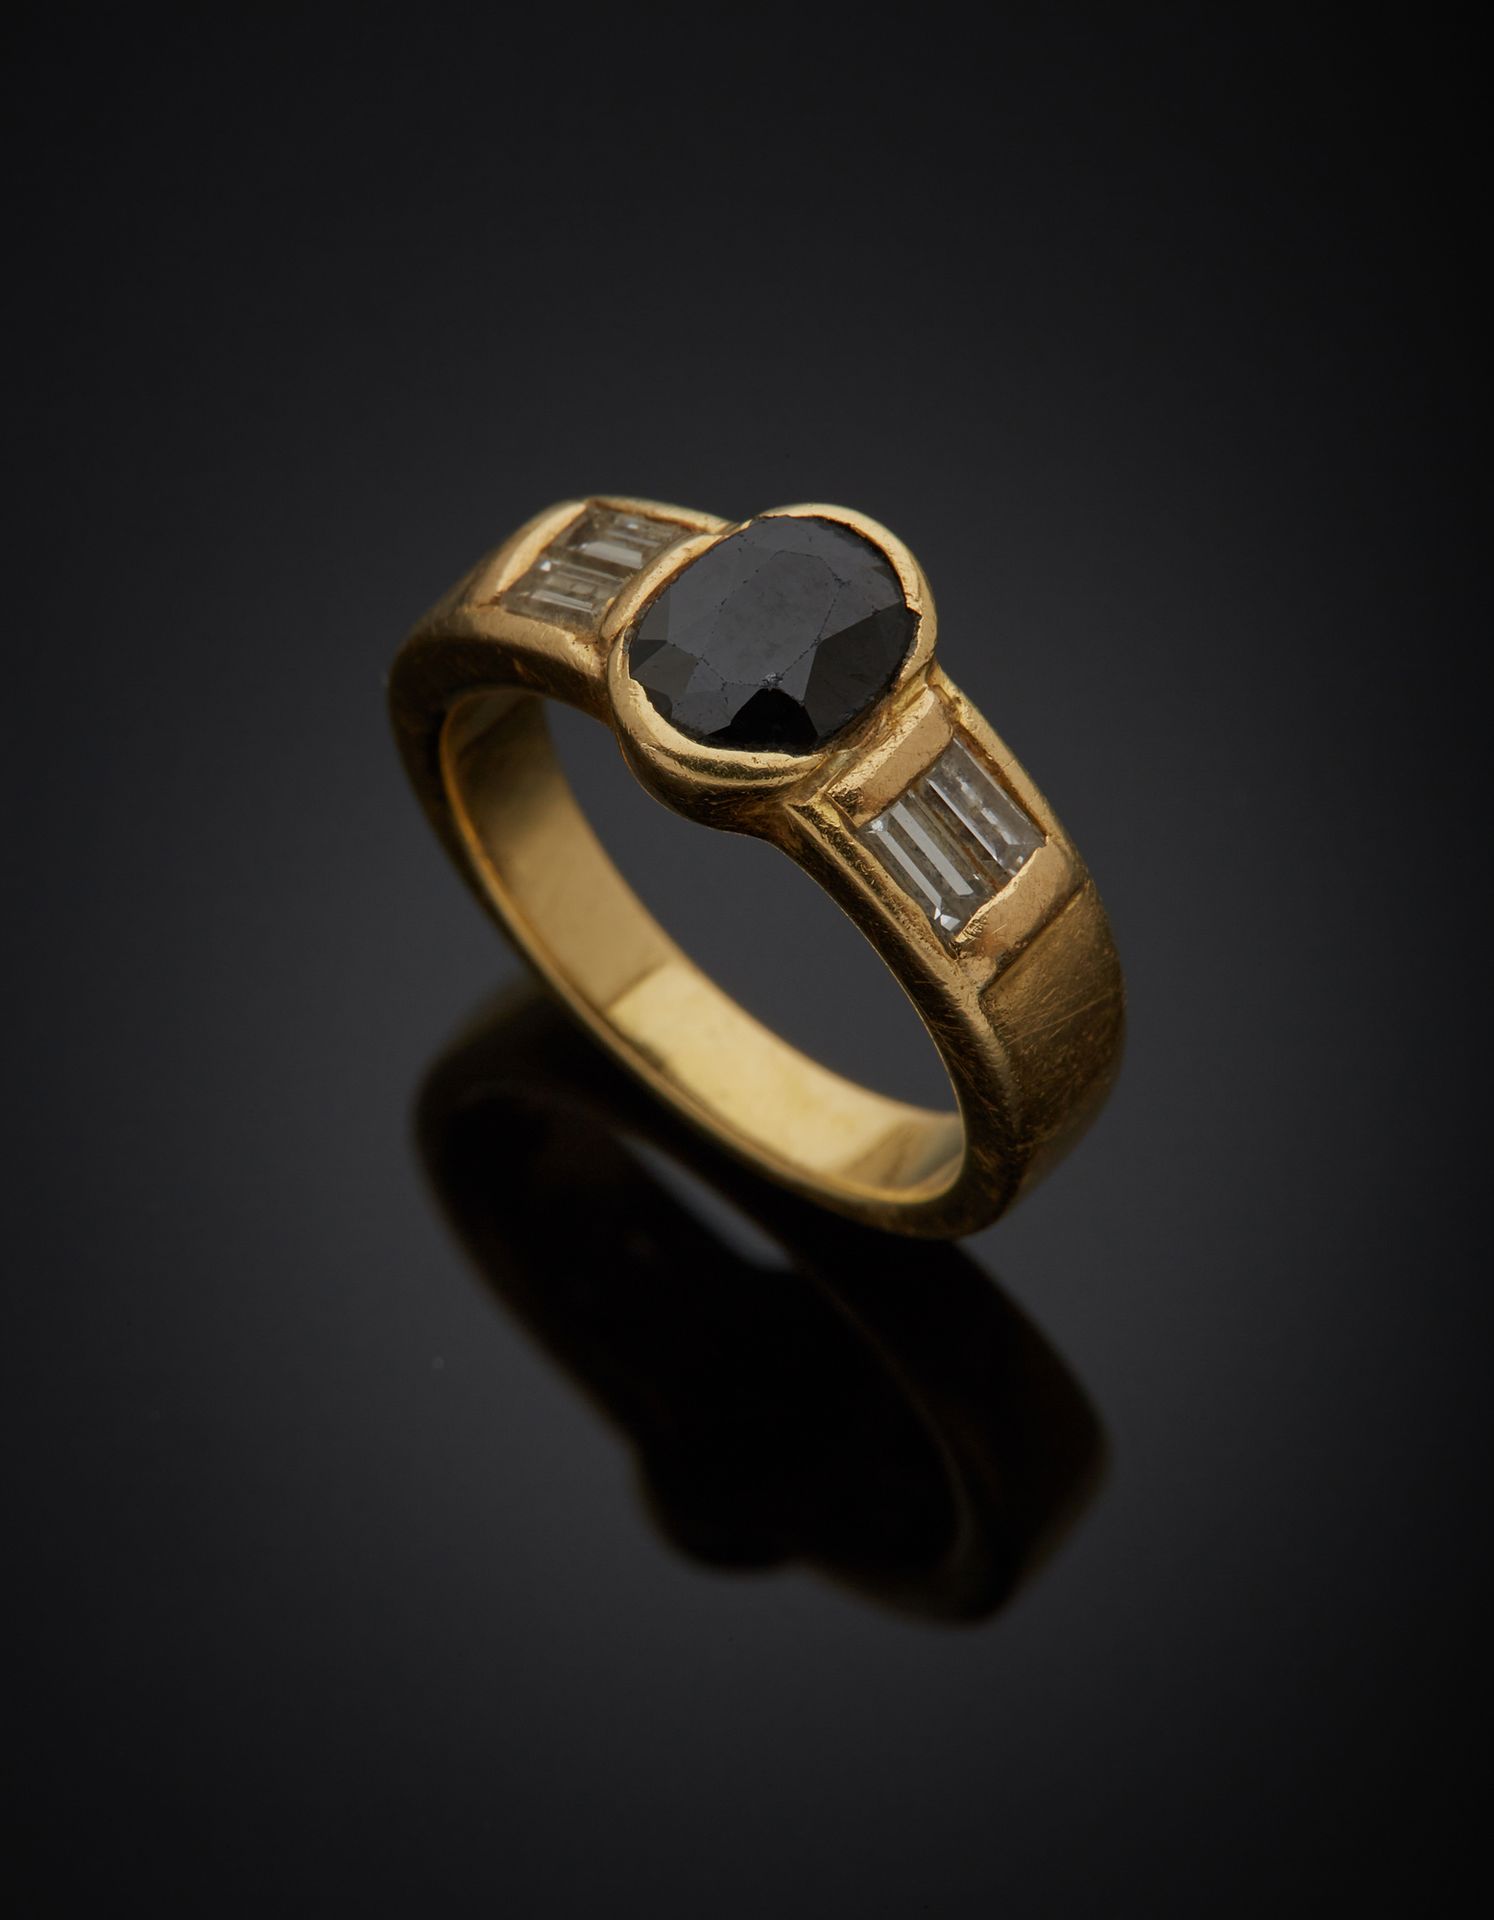 Null 一枚18K黄金750‰的戒指，镶嵌着一颗椭圆形的蓝宝石，上面有两颗长方形切割的钻石。

石头碎裂，有使用的痕迹。

手指尺寸46 毛重4.80克